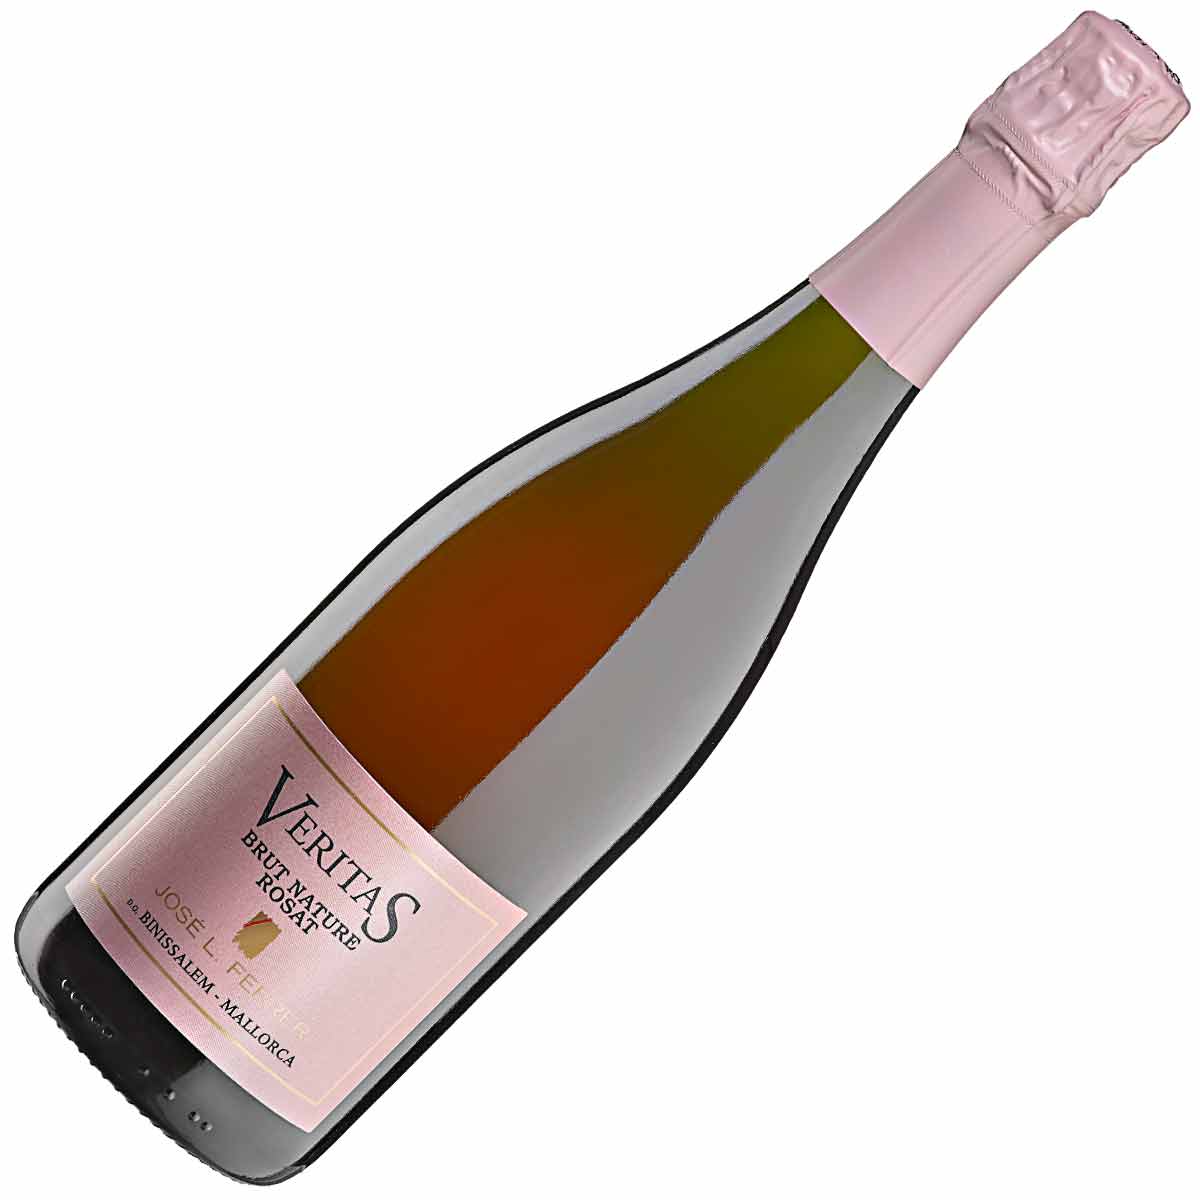 Ferrer Veritas Brut Nature sparkling rosé wine D.O. Binissalem